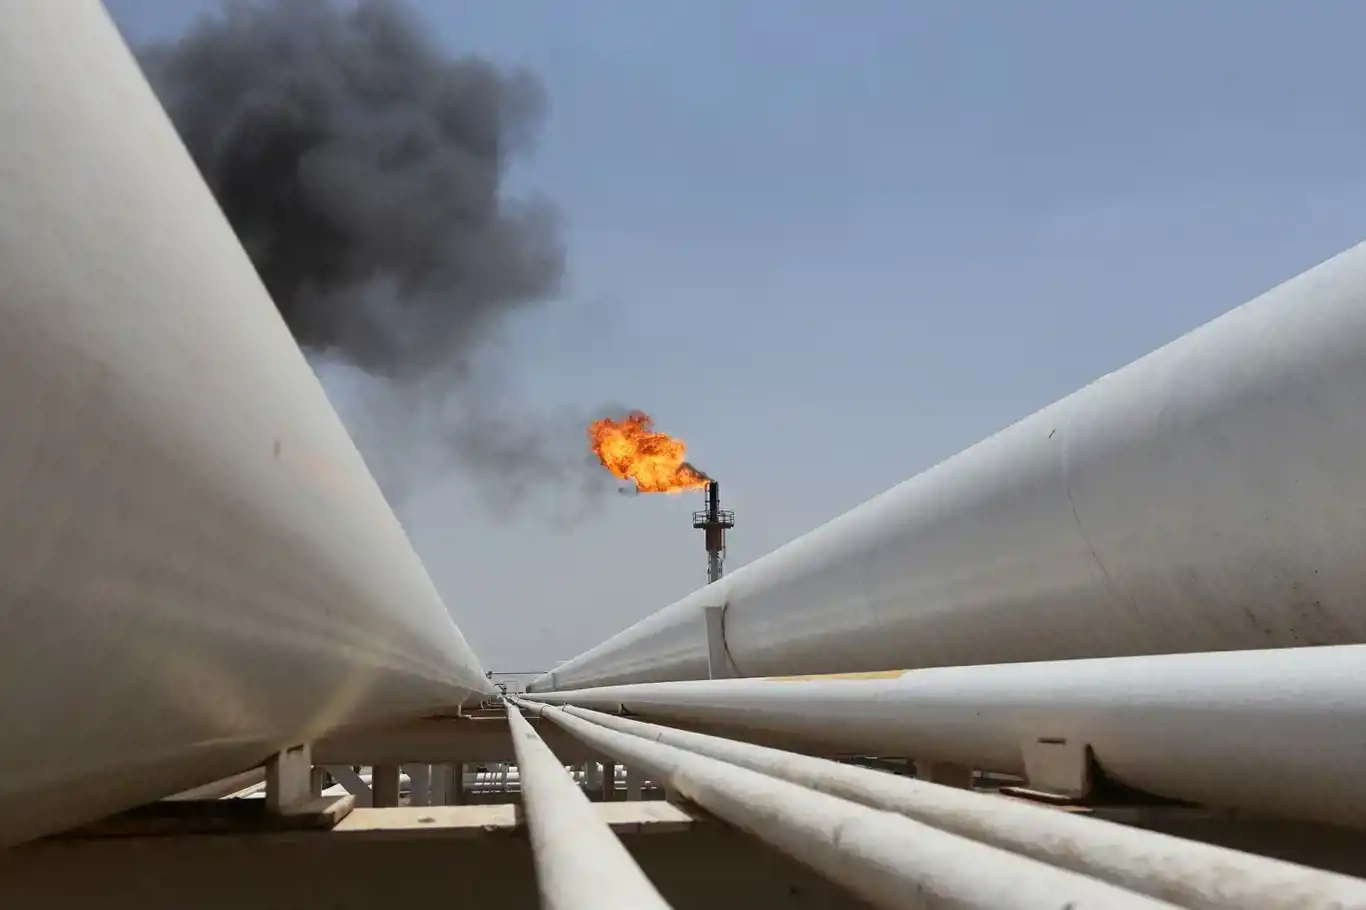 Türkiye ordered to pay Iraq $1.4 billion for oil export from Kurdistan